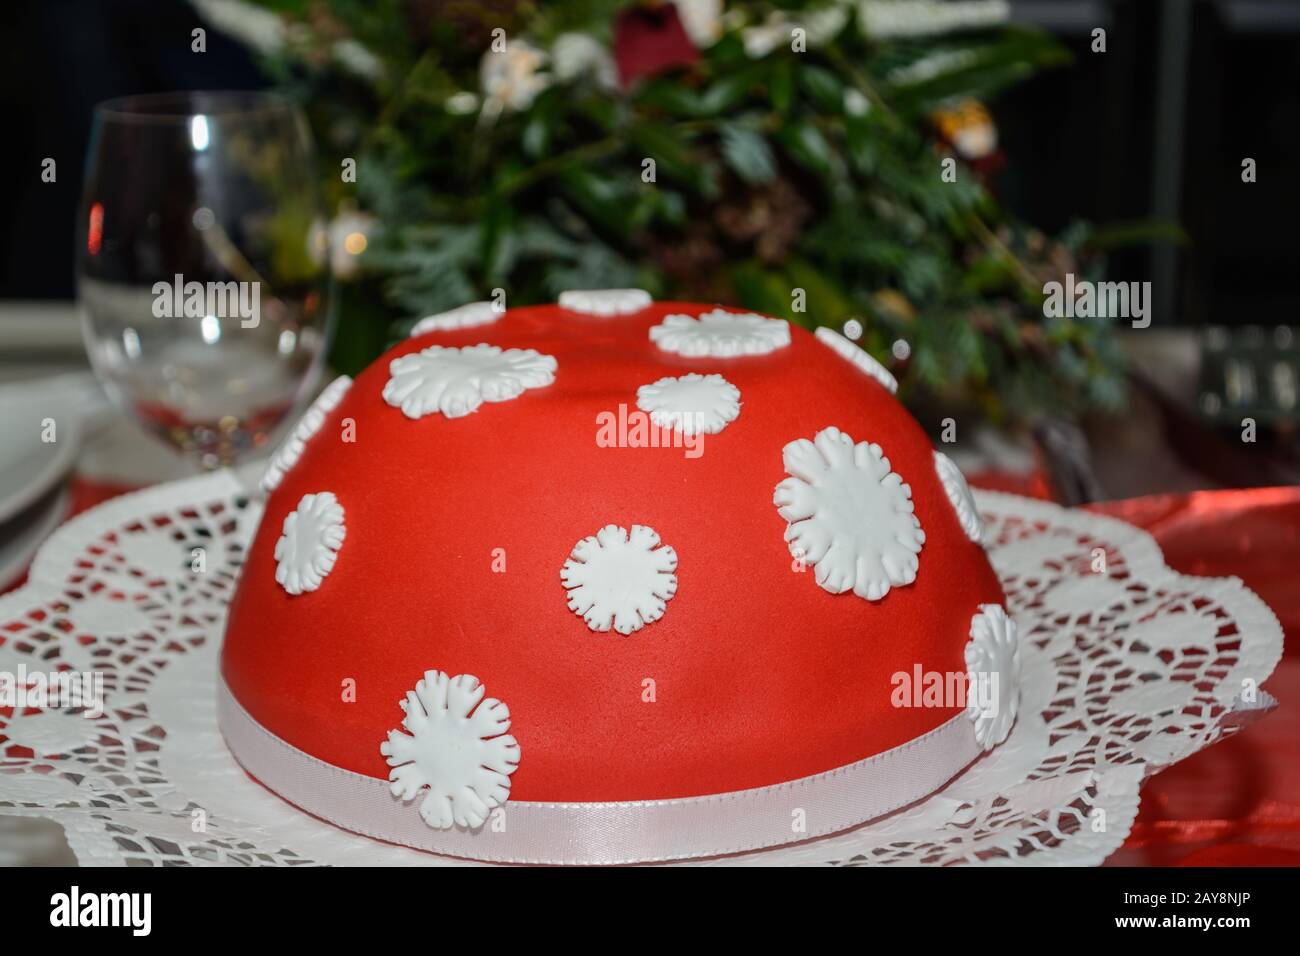 Torta di marzapane con glassa di zucchero rosso - bomba calorica Foto Stock